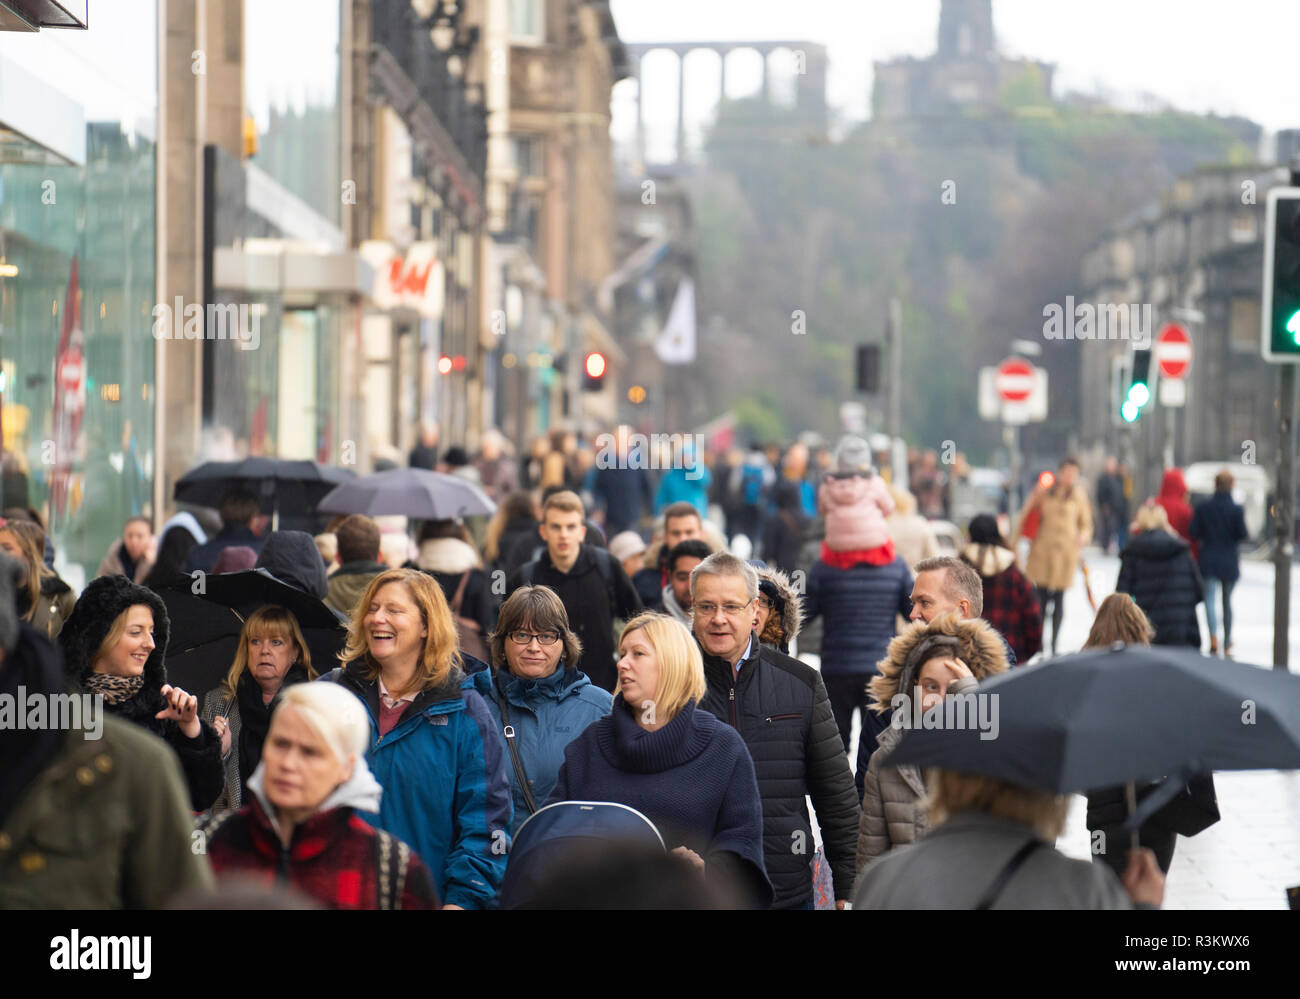 Edinburgh, Schottland, Großbritannien. 23. November 2018. Viele Schwarze Freitag Käufer heraus auf die Princes Street trotz Regenwetter, Edinburgh, Schottland, UK Credit: Iain Masterton/Alamy leben Nachrichten Stockfoto